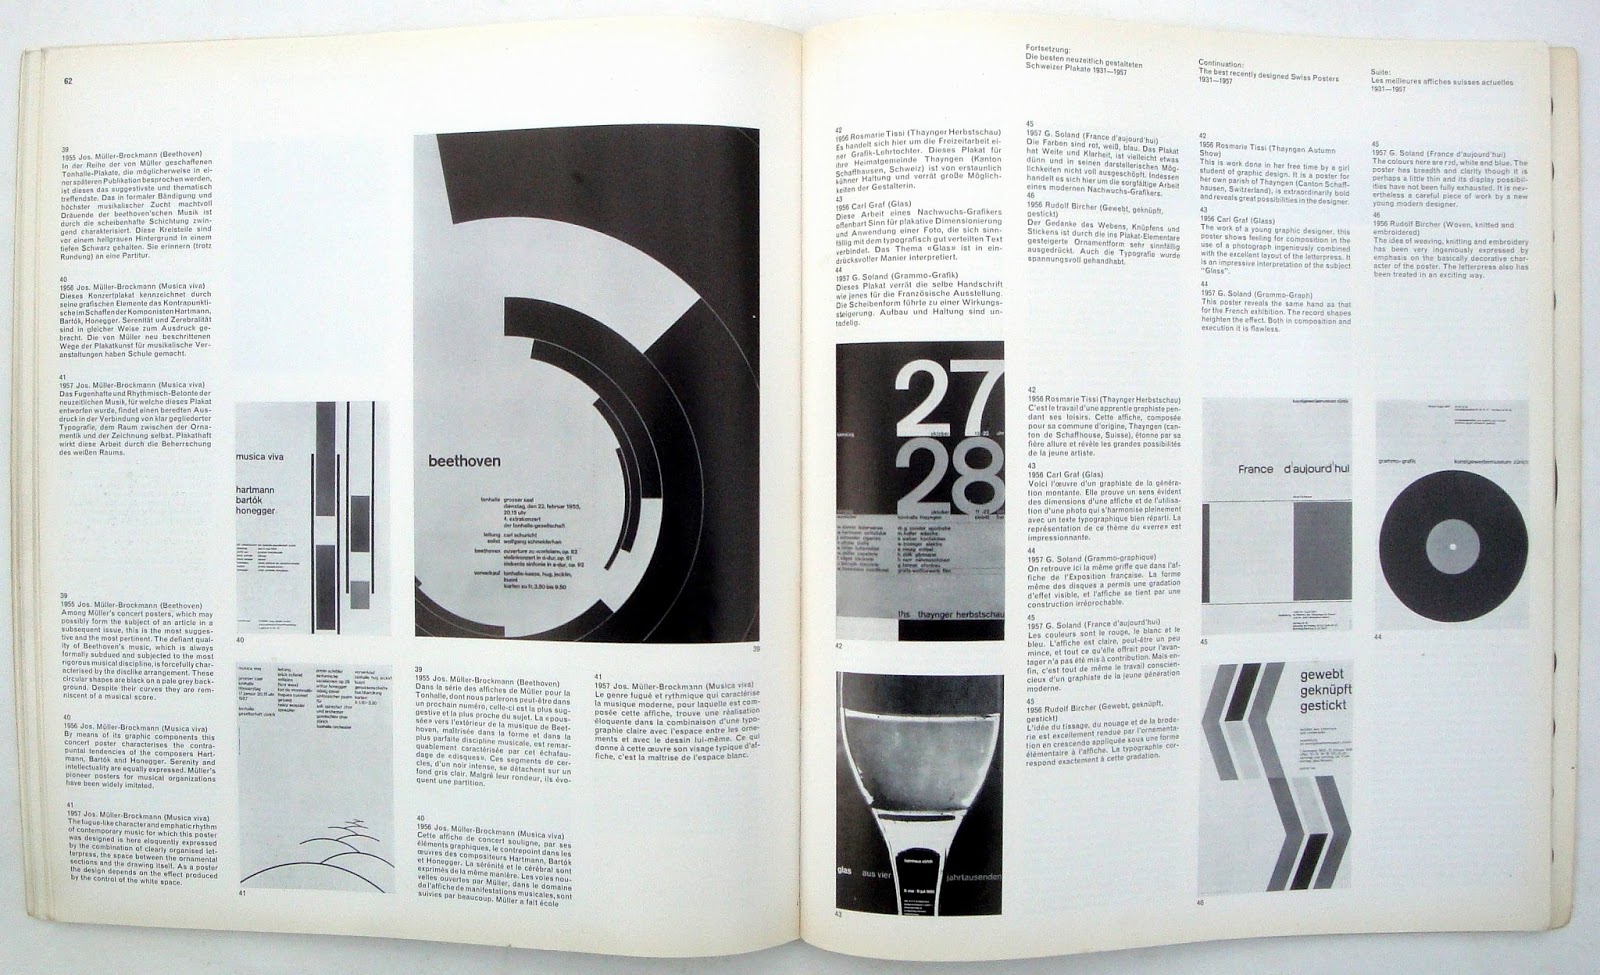 Neue Grafik / New Graphic Design / Graphisme actual / Issue 1, September, 1958